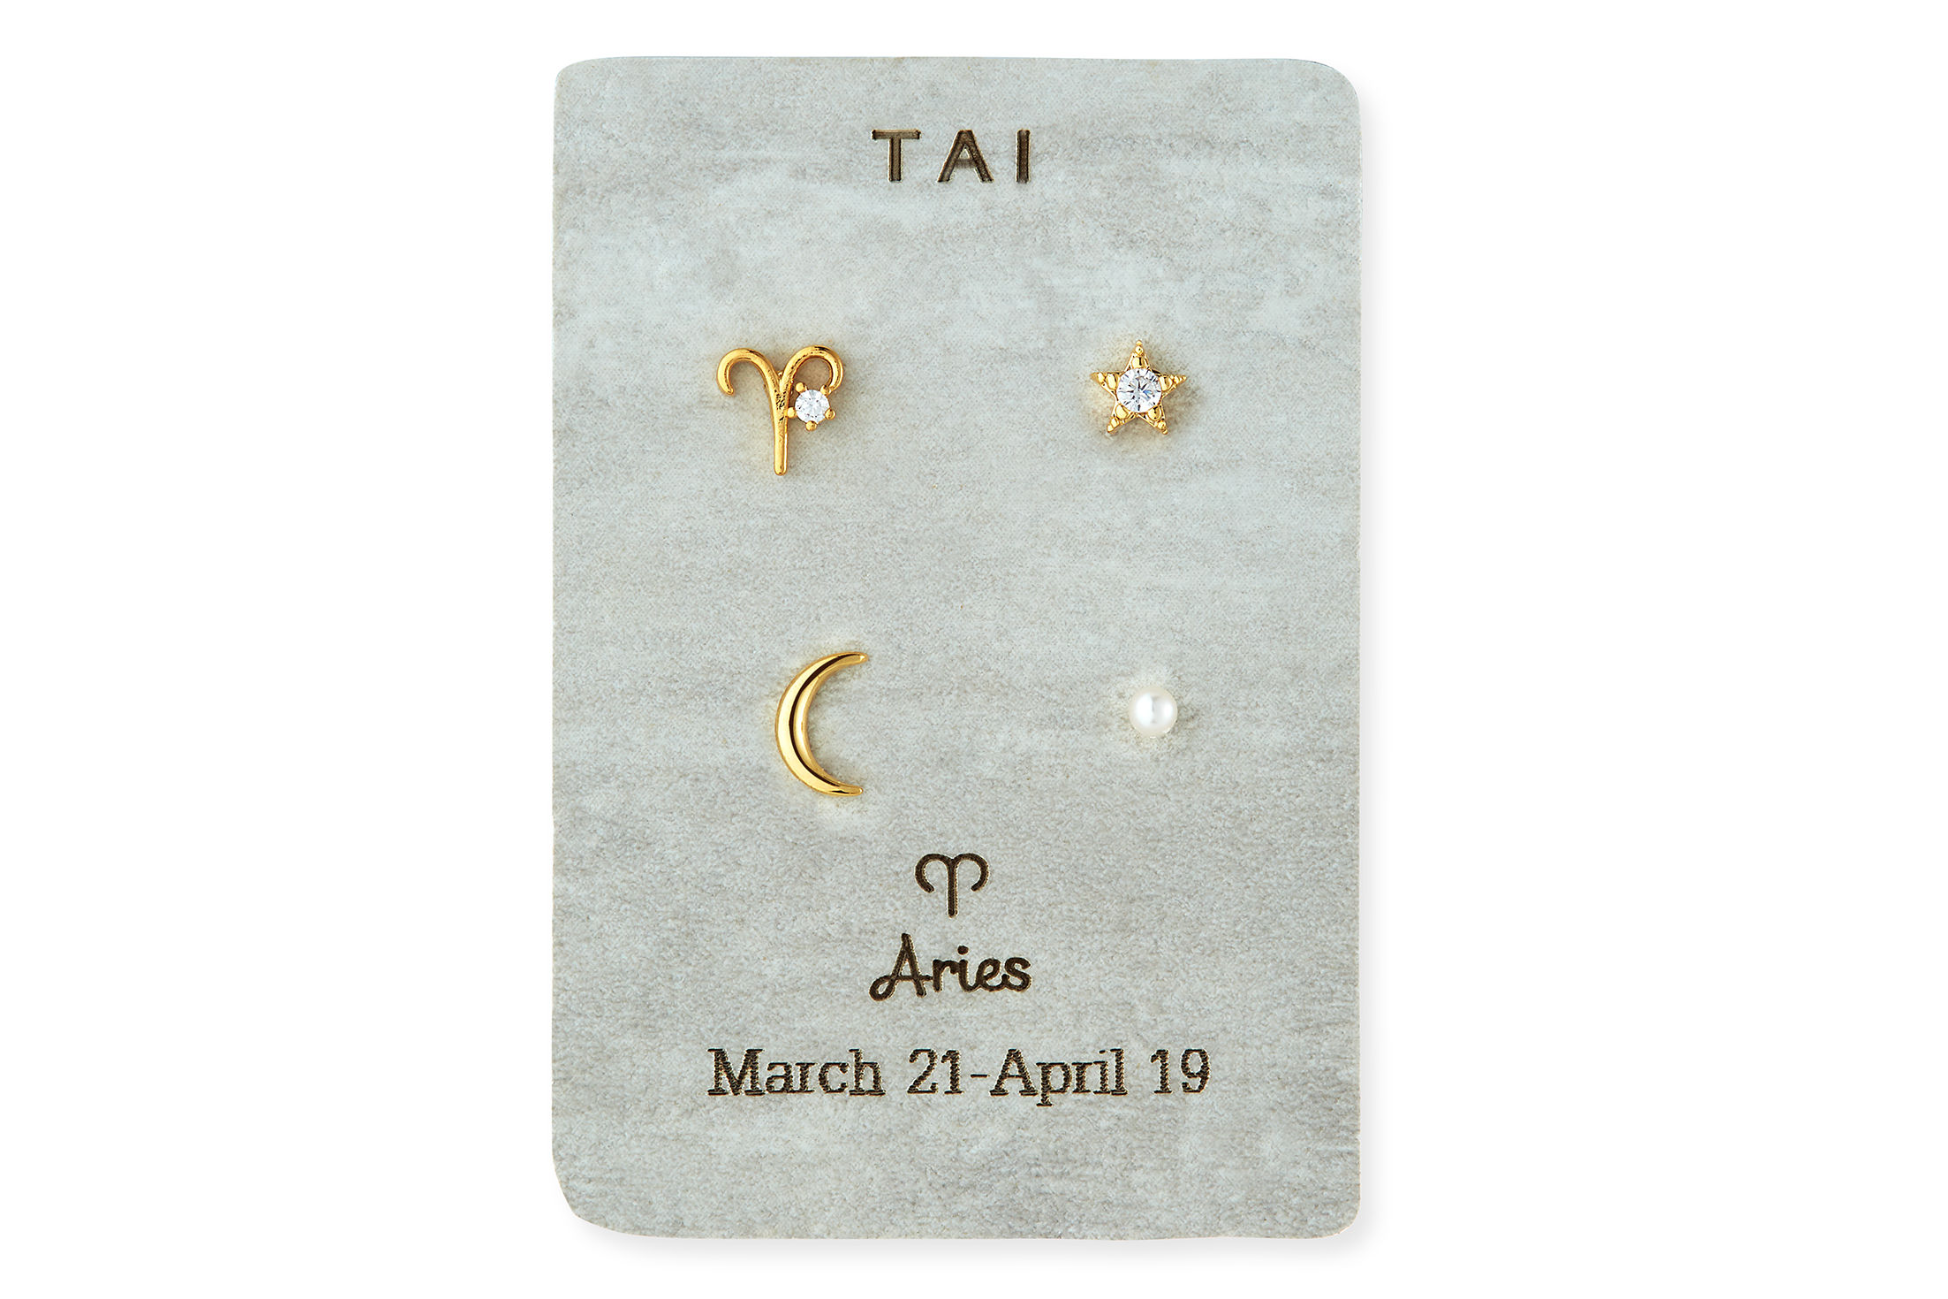 zodiac-earrings